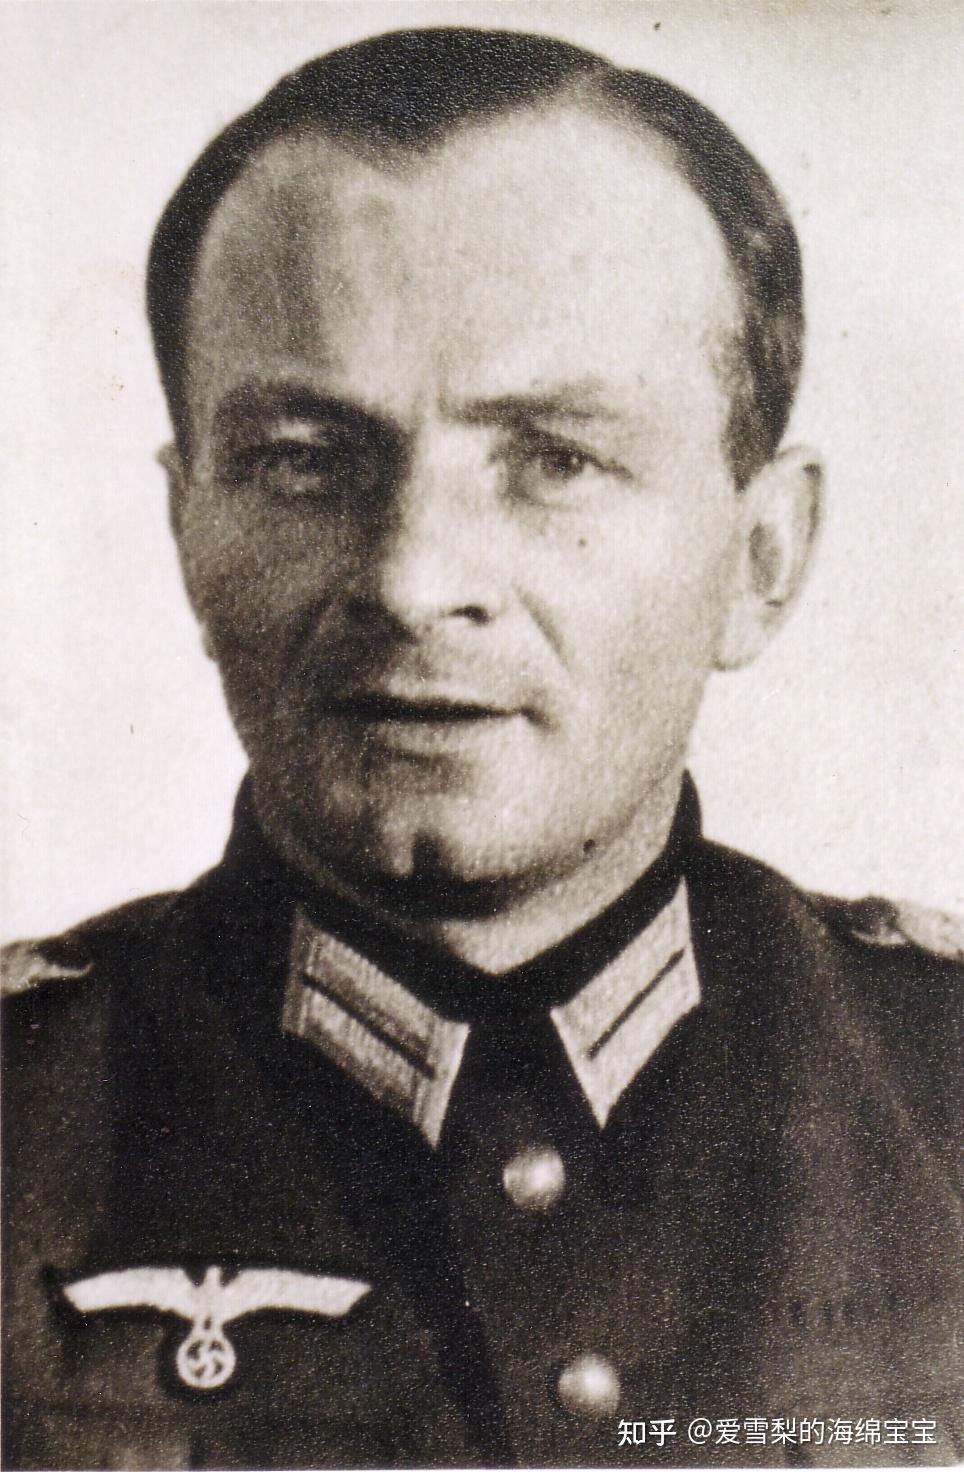 陆军上校格奥尔格·汉森( georg hansen),1944年2月13日到1944年6月1